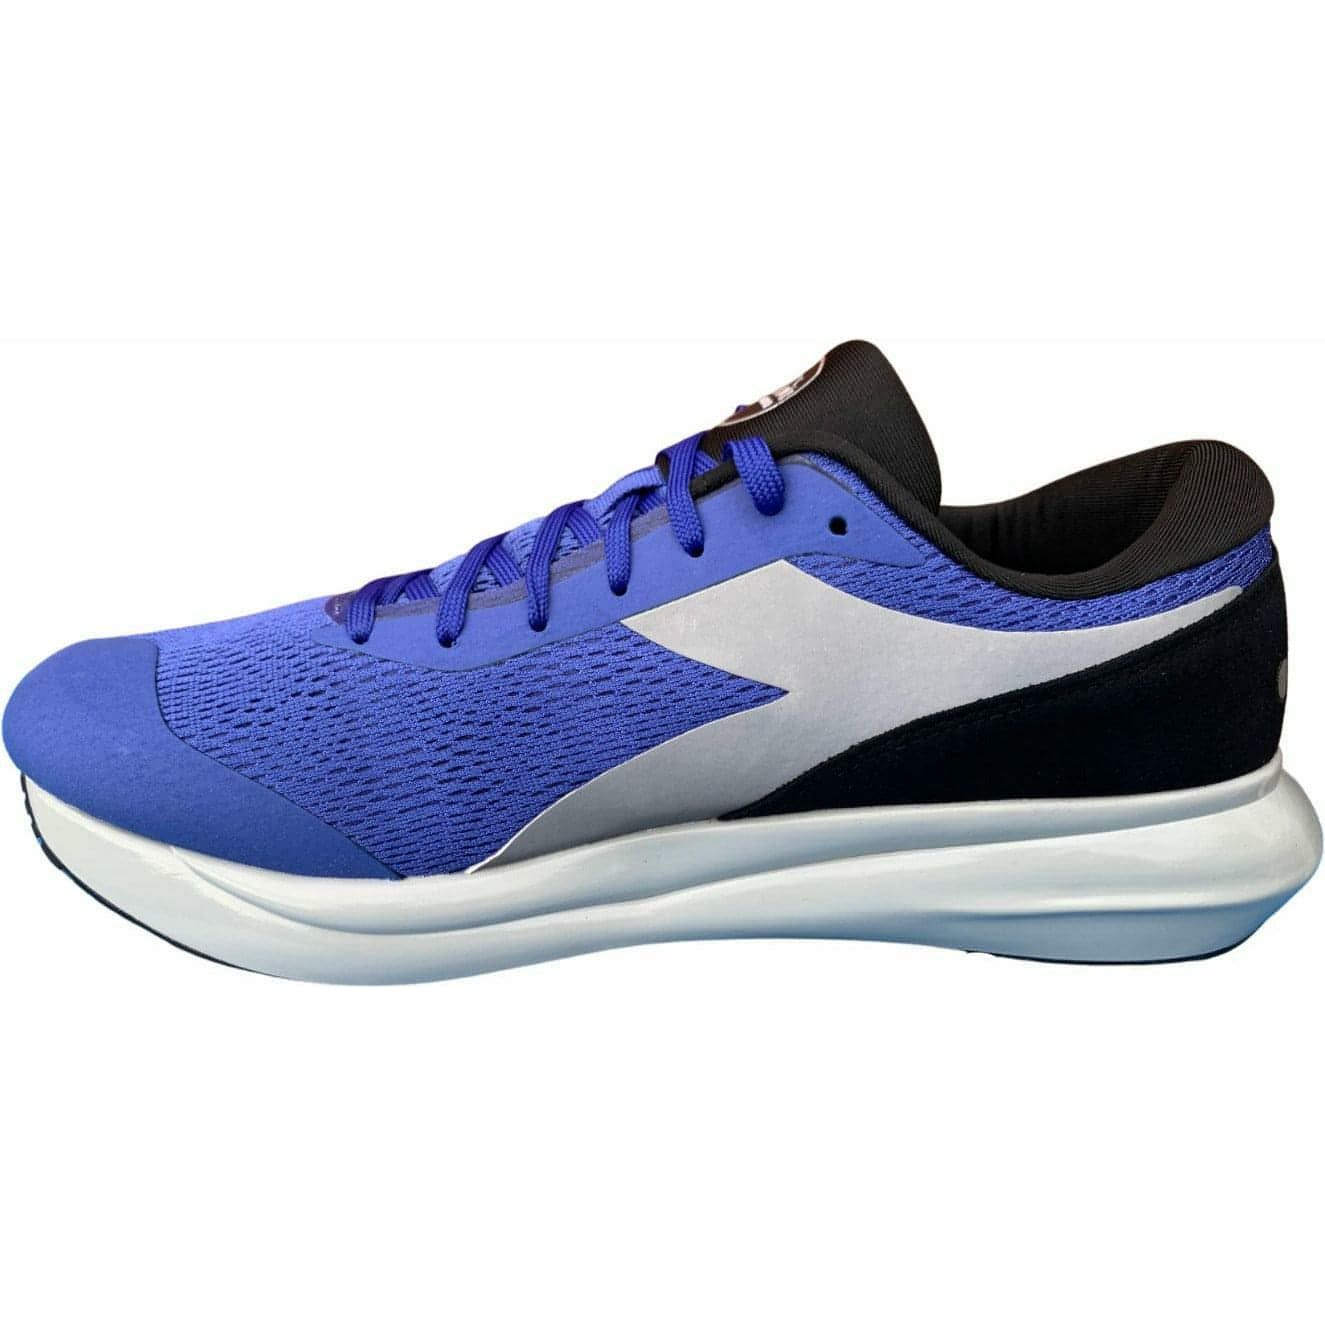 Diadora Mythos MDS Mens Running Shoes - Blue – Start Fitness